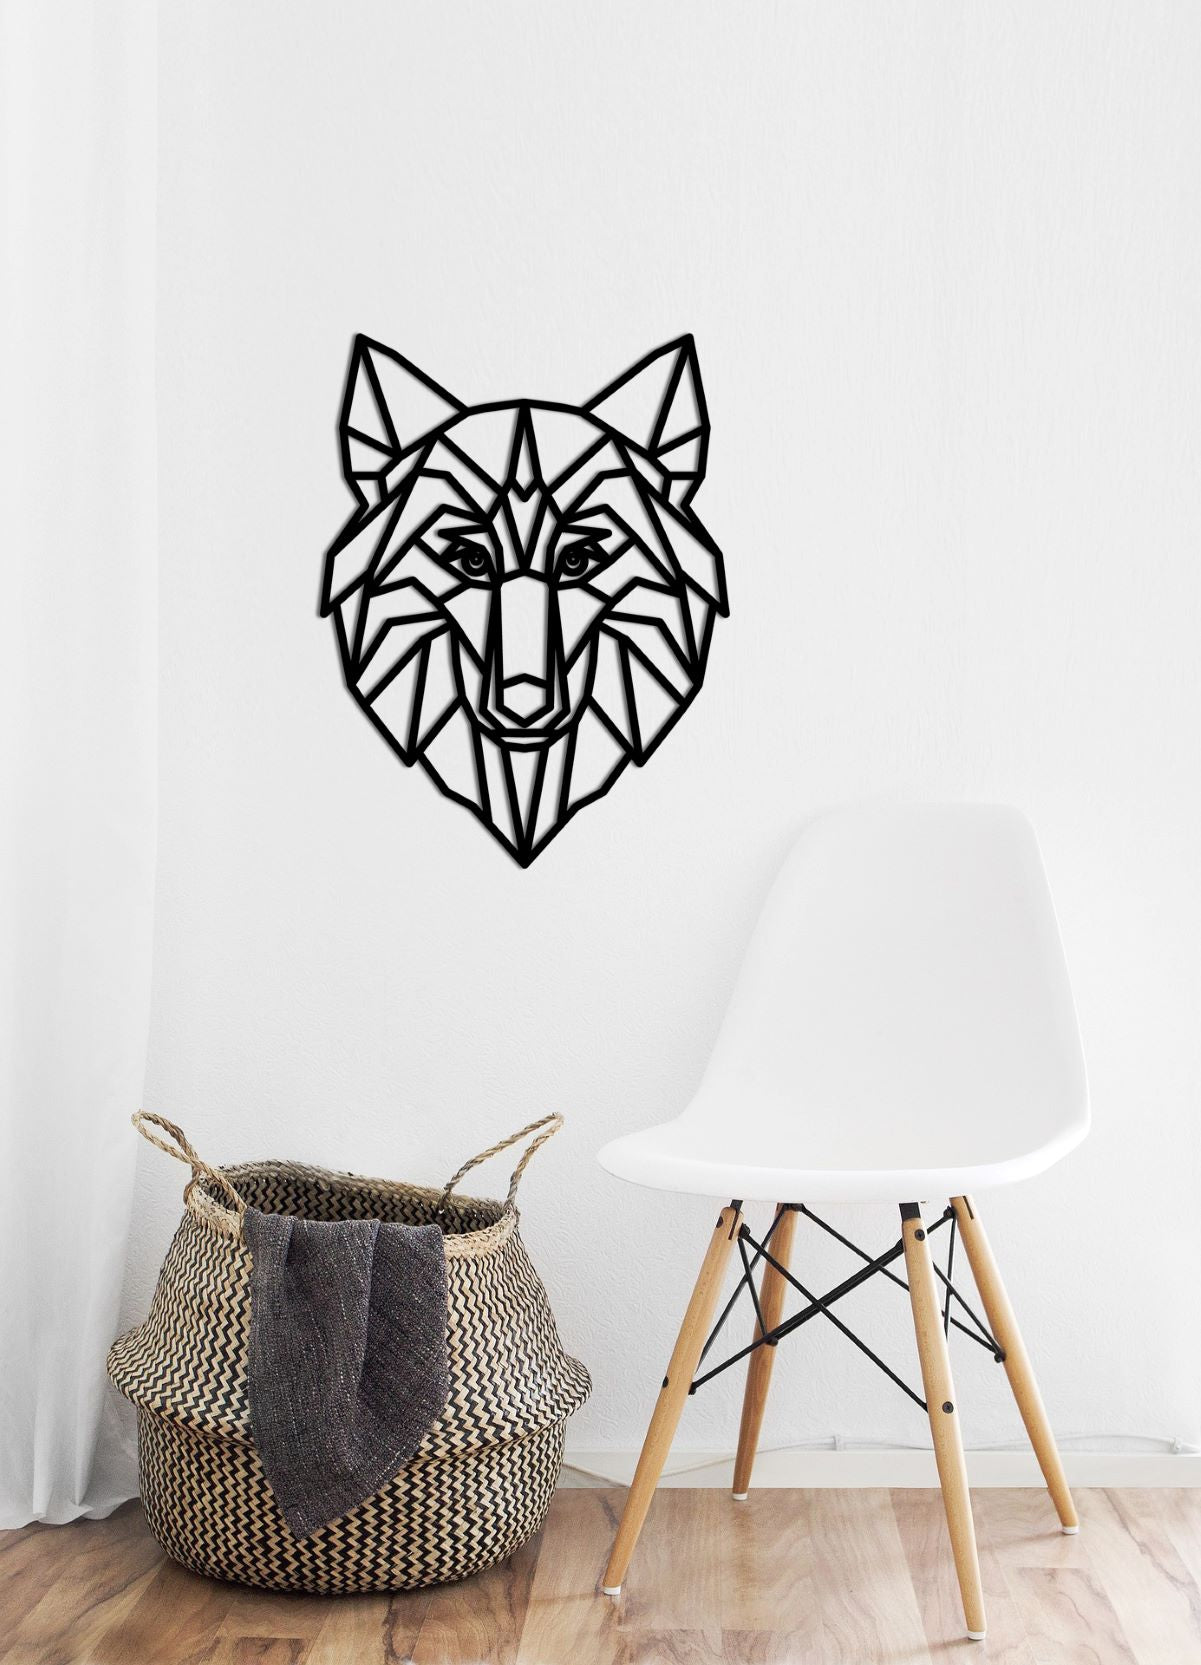 Deze prachtige wolf is een geweldige aanvulling voor jouw huis en zal perfect passen in een minimalistisch interieur als eye-catcher. Zie jij de wolf al hangen op de muur? Breng de natuur in jouw interieur !